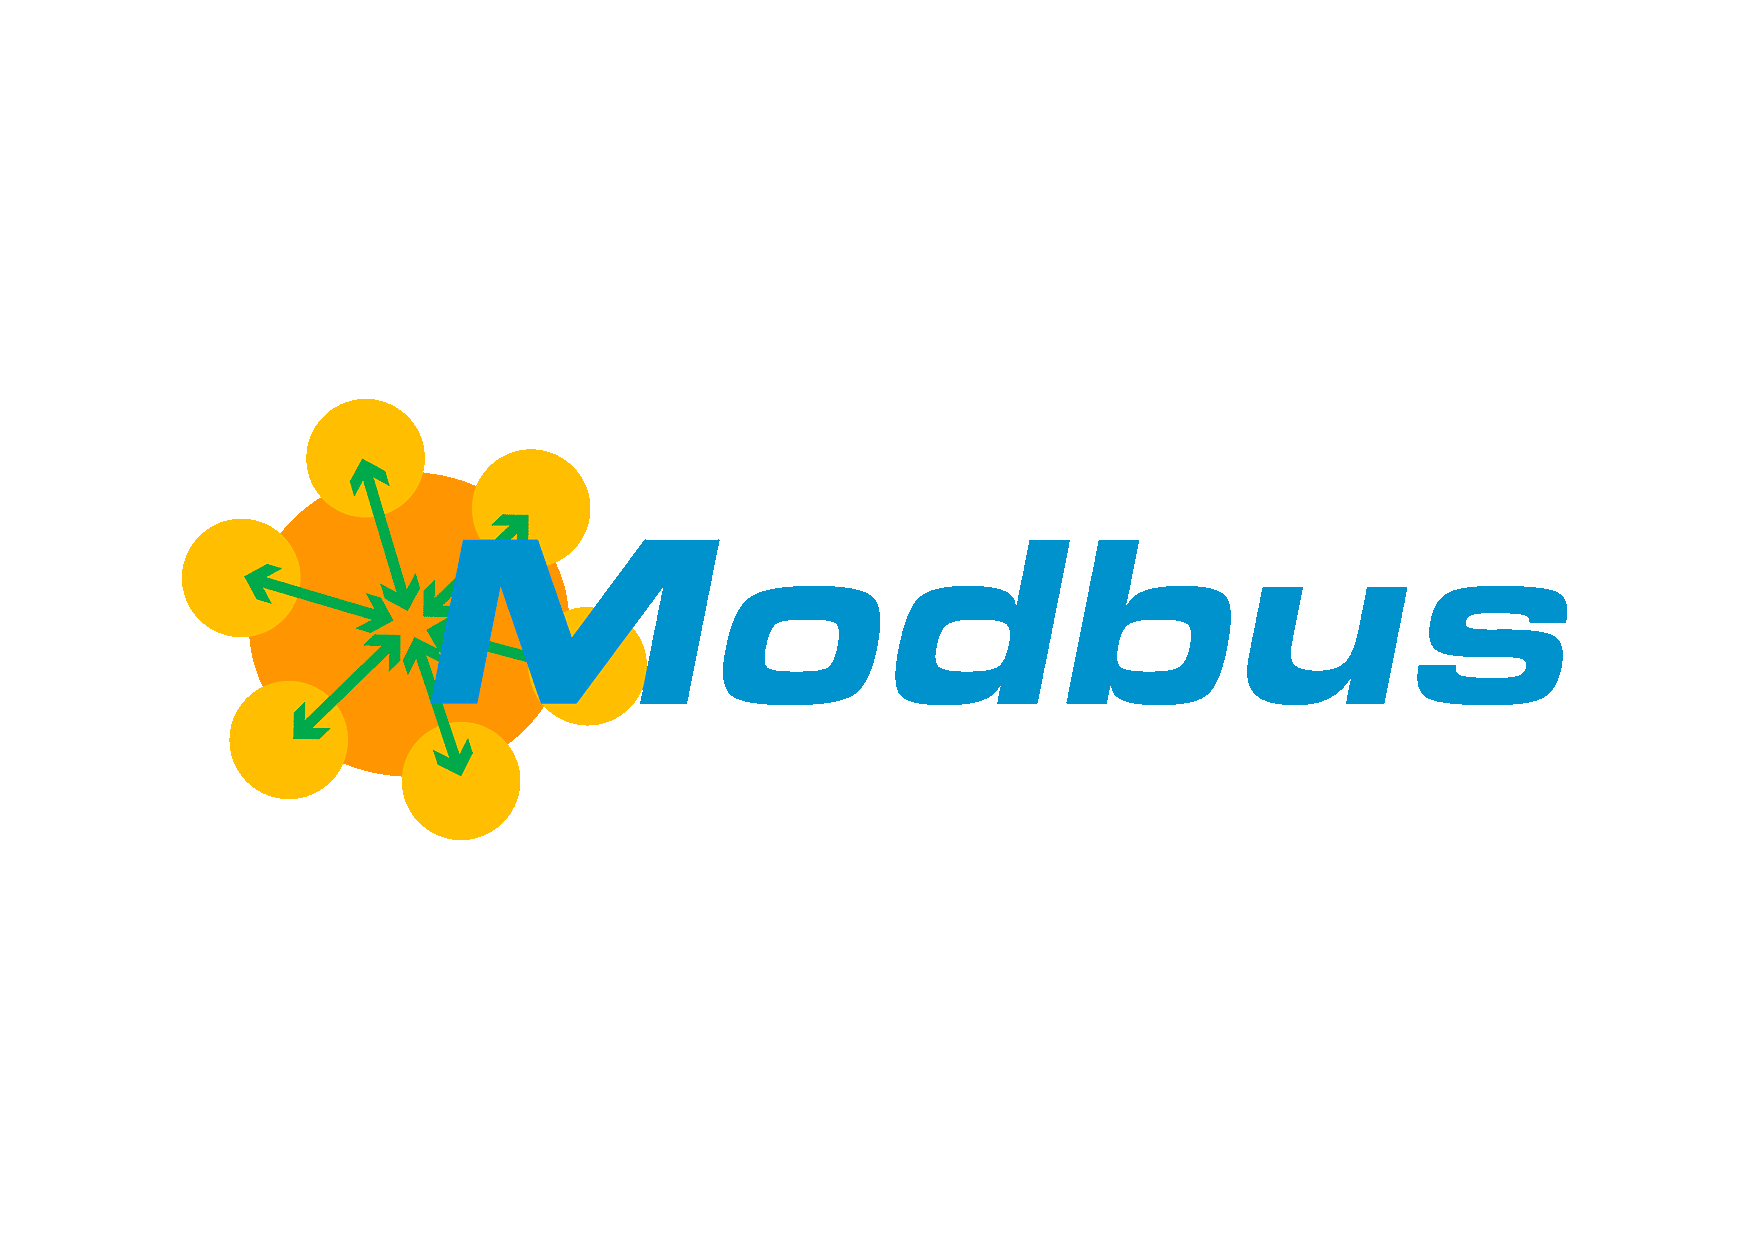 用免费蜜罐工具配置Modbus工控蜜罐 企业资讯 安全工具 2021-08-05 13:55:02 收藏